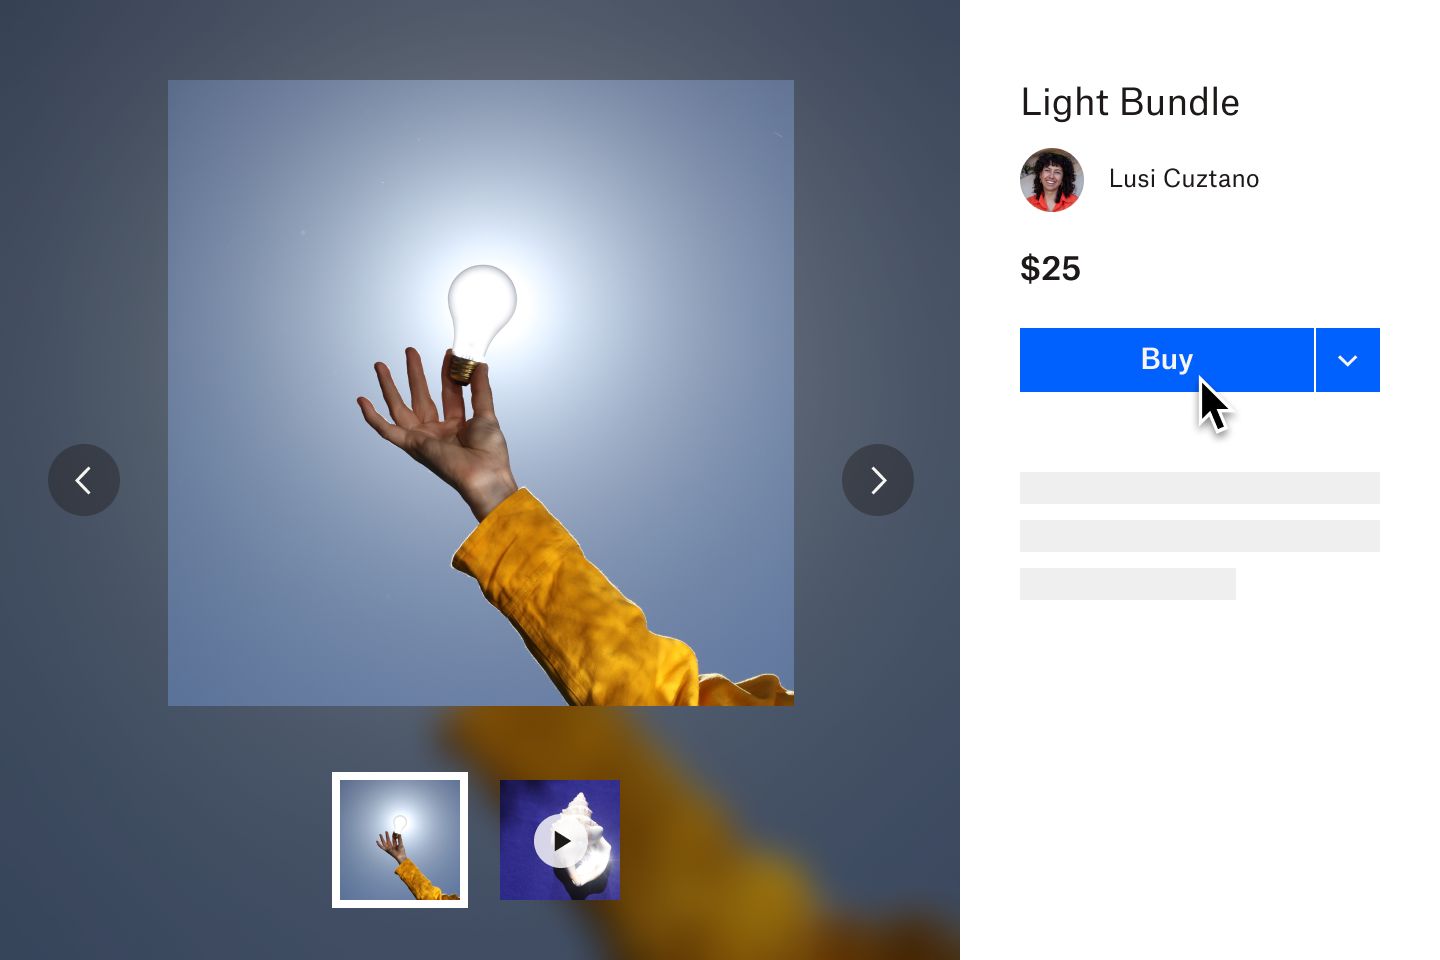 客户单击一张标价 25 美元的照片旁边的“购买”，这张照片中一个人拿着一个发光的灯泡 